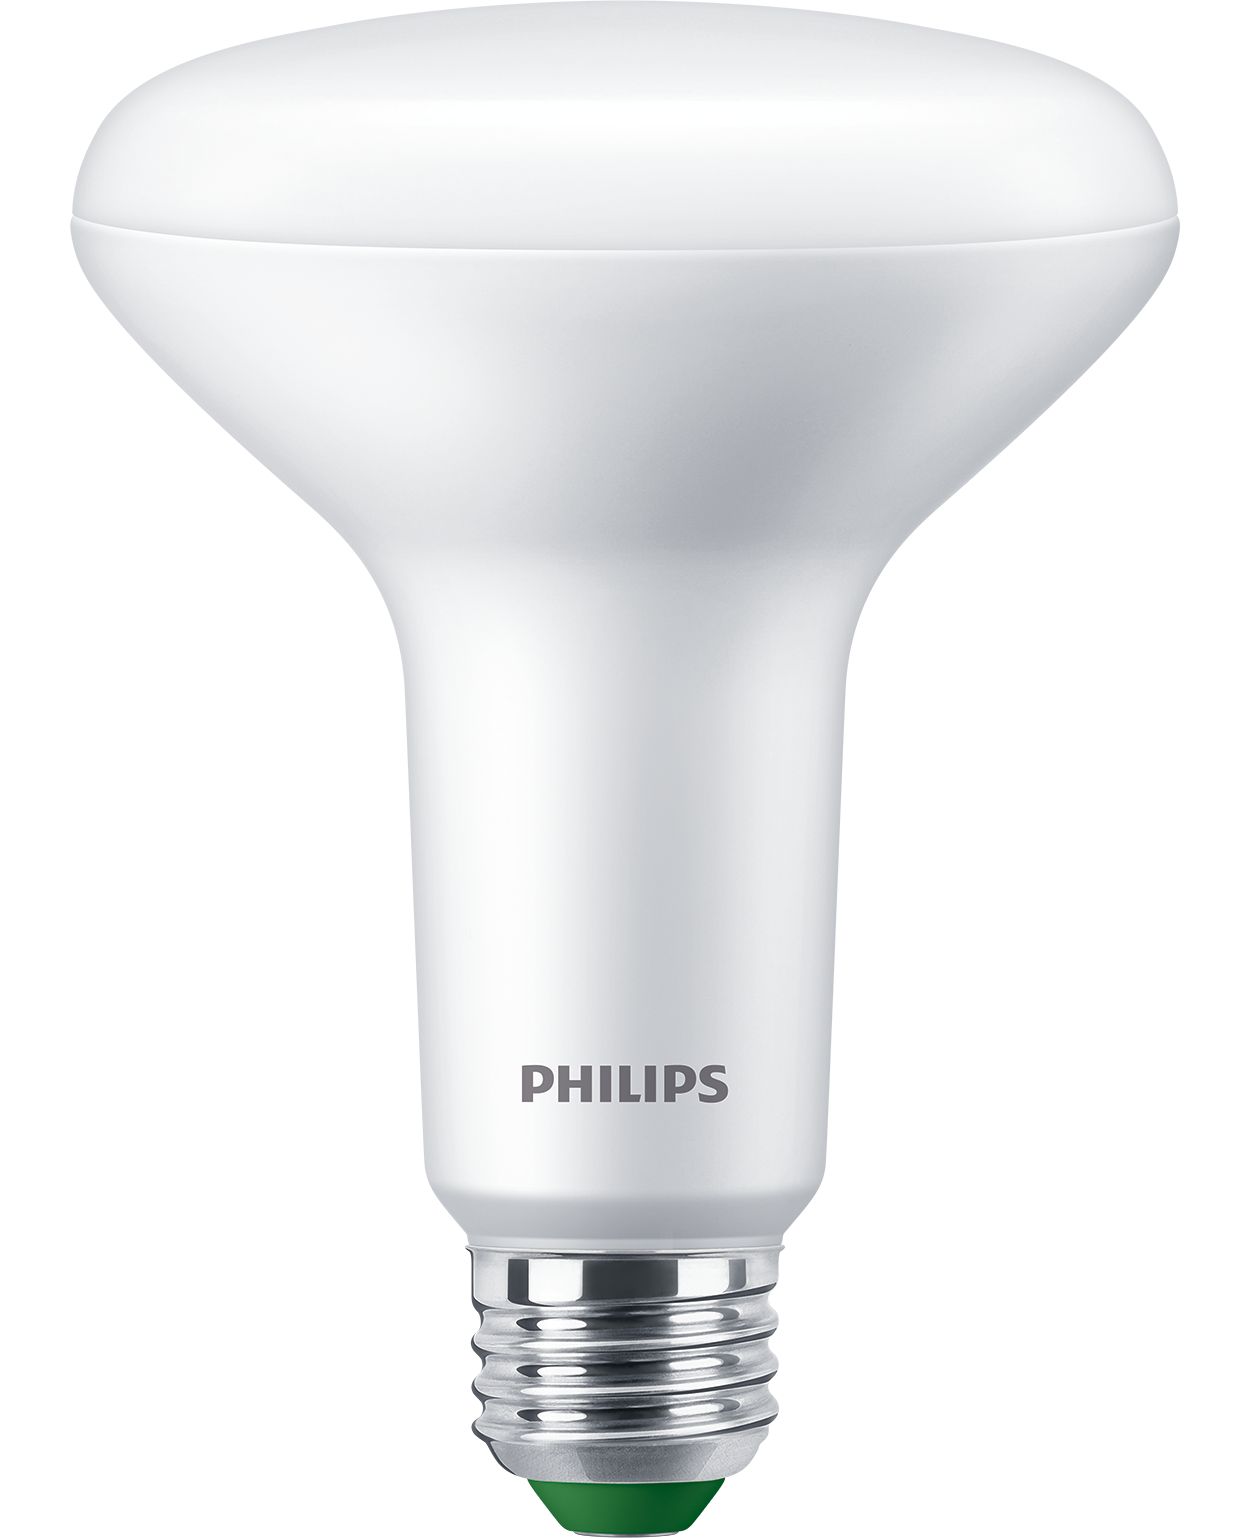 Lampe ultra efficace, offre la solution la plus durable et la plus écoénergétique pour vous